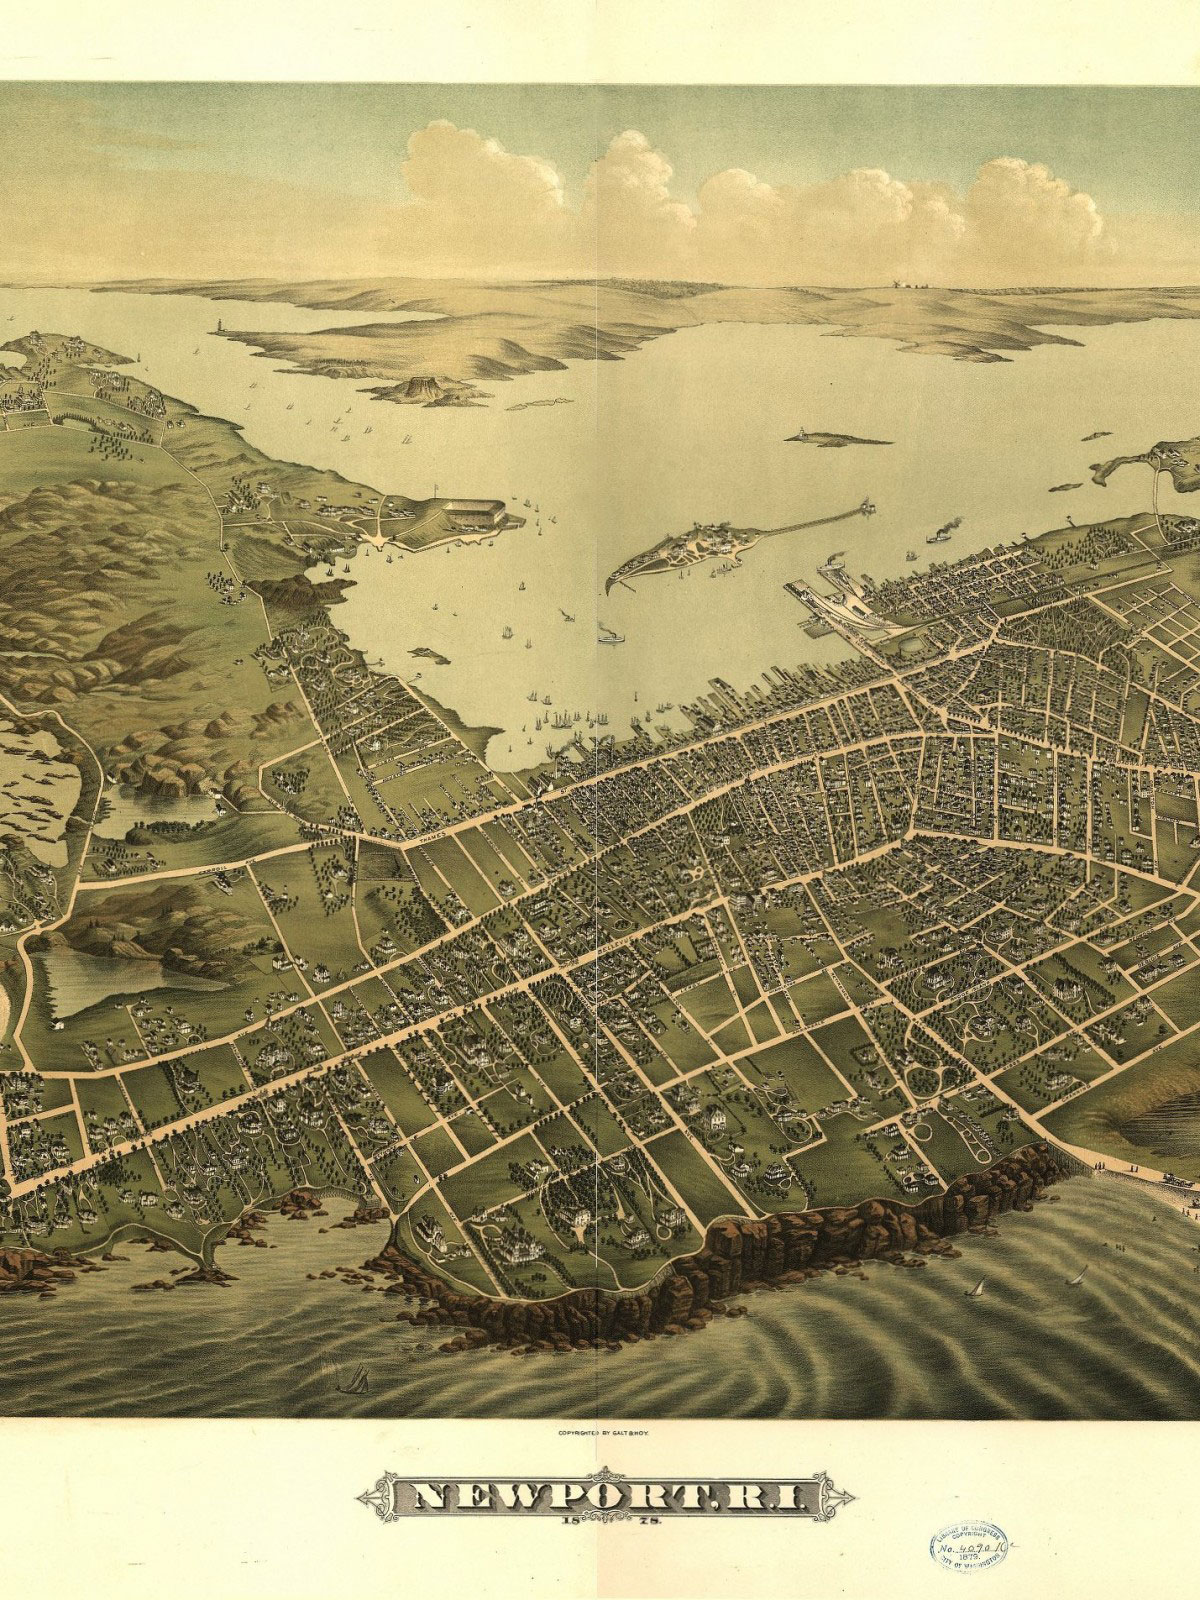 Newport Rhode Island - Historical Map